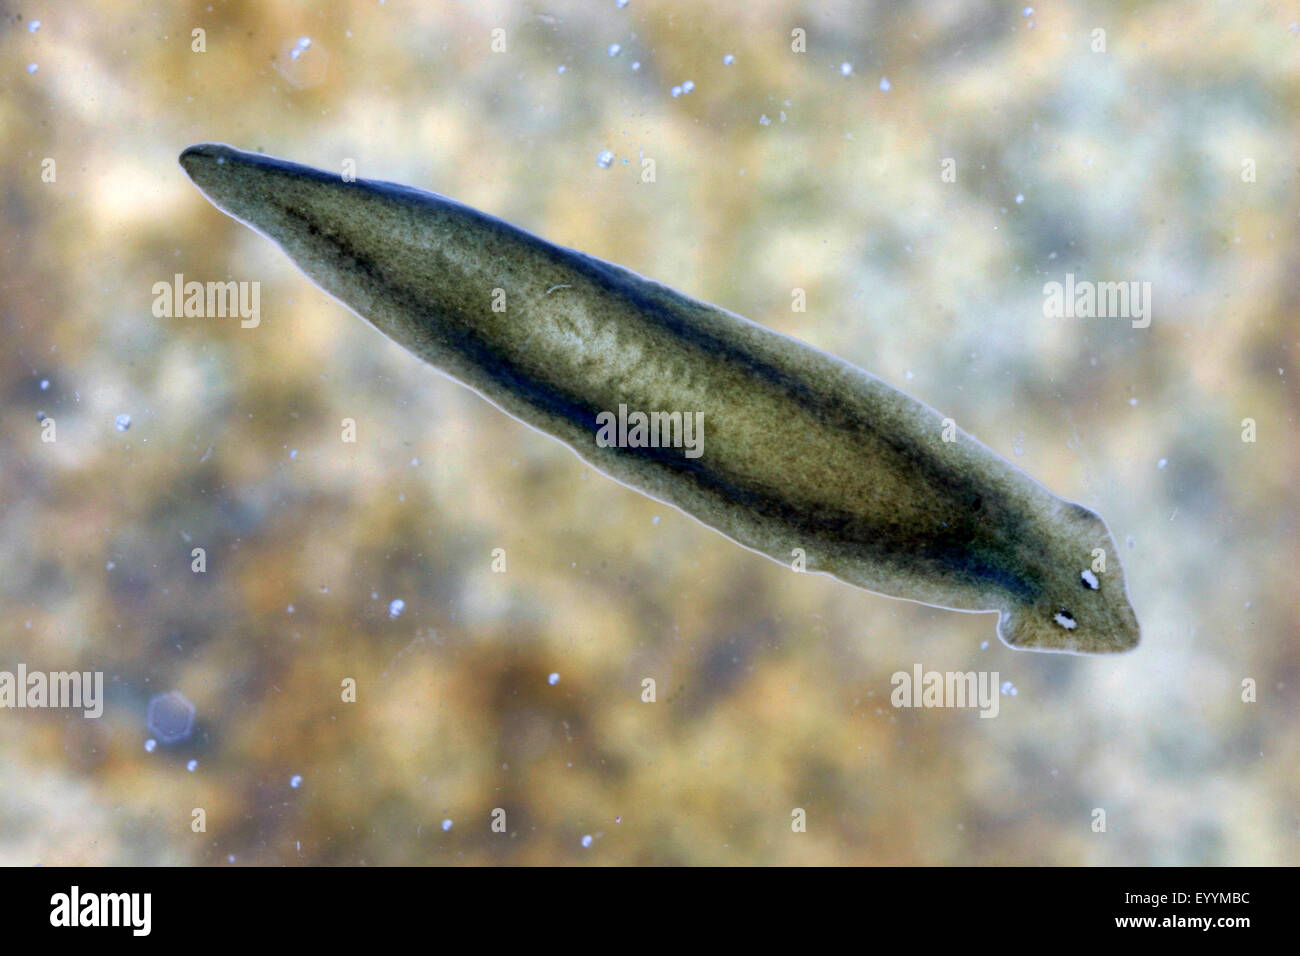 flatworm (Dugesia gonocephala, Planaria gonocephala), under water Stock Photo